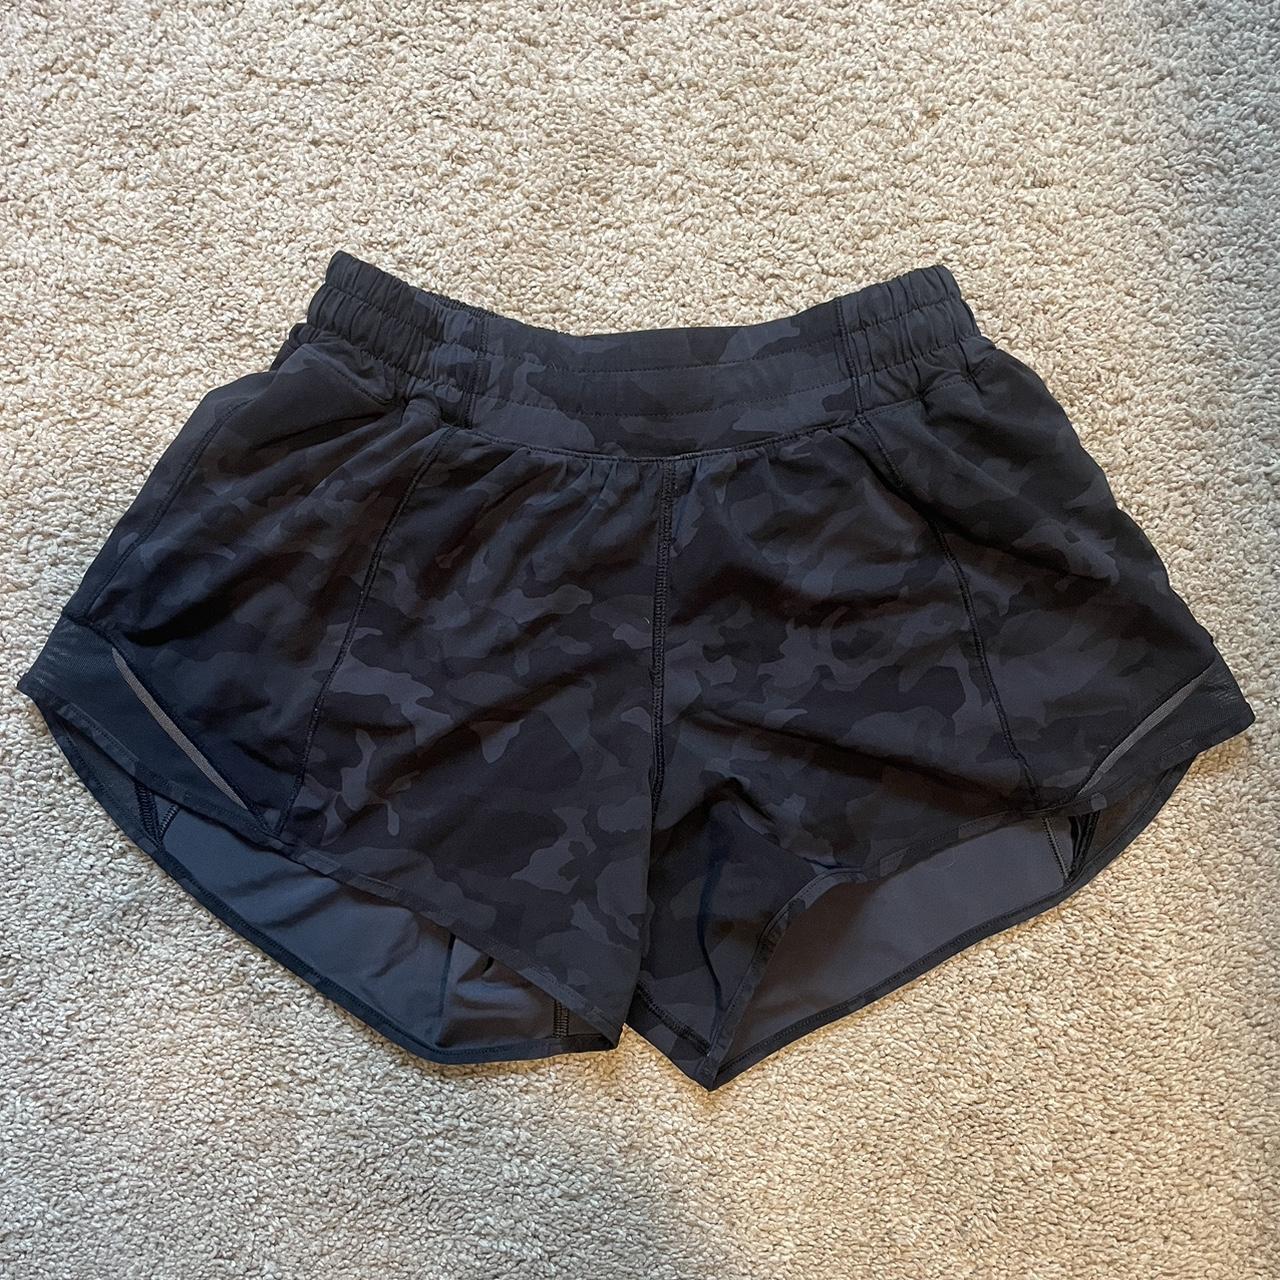 Cute black camo lululemon shorts. 4 in inseam, size... - Depop